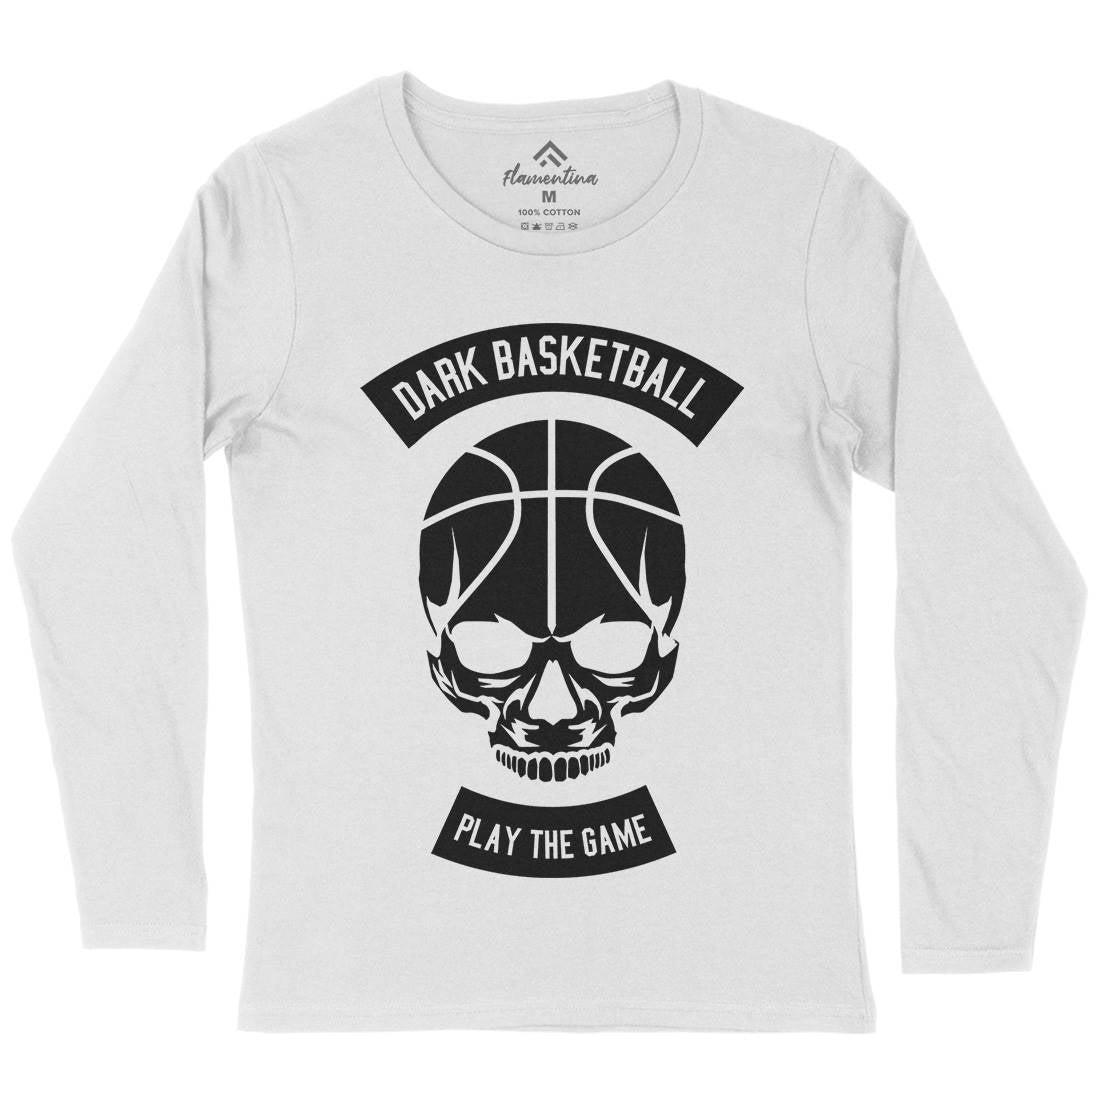 Dark Basketball Womens Long Sleeve T-Shirt Sport B525